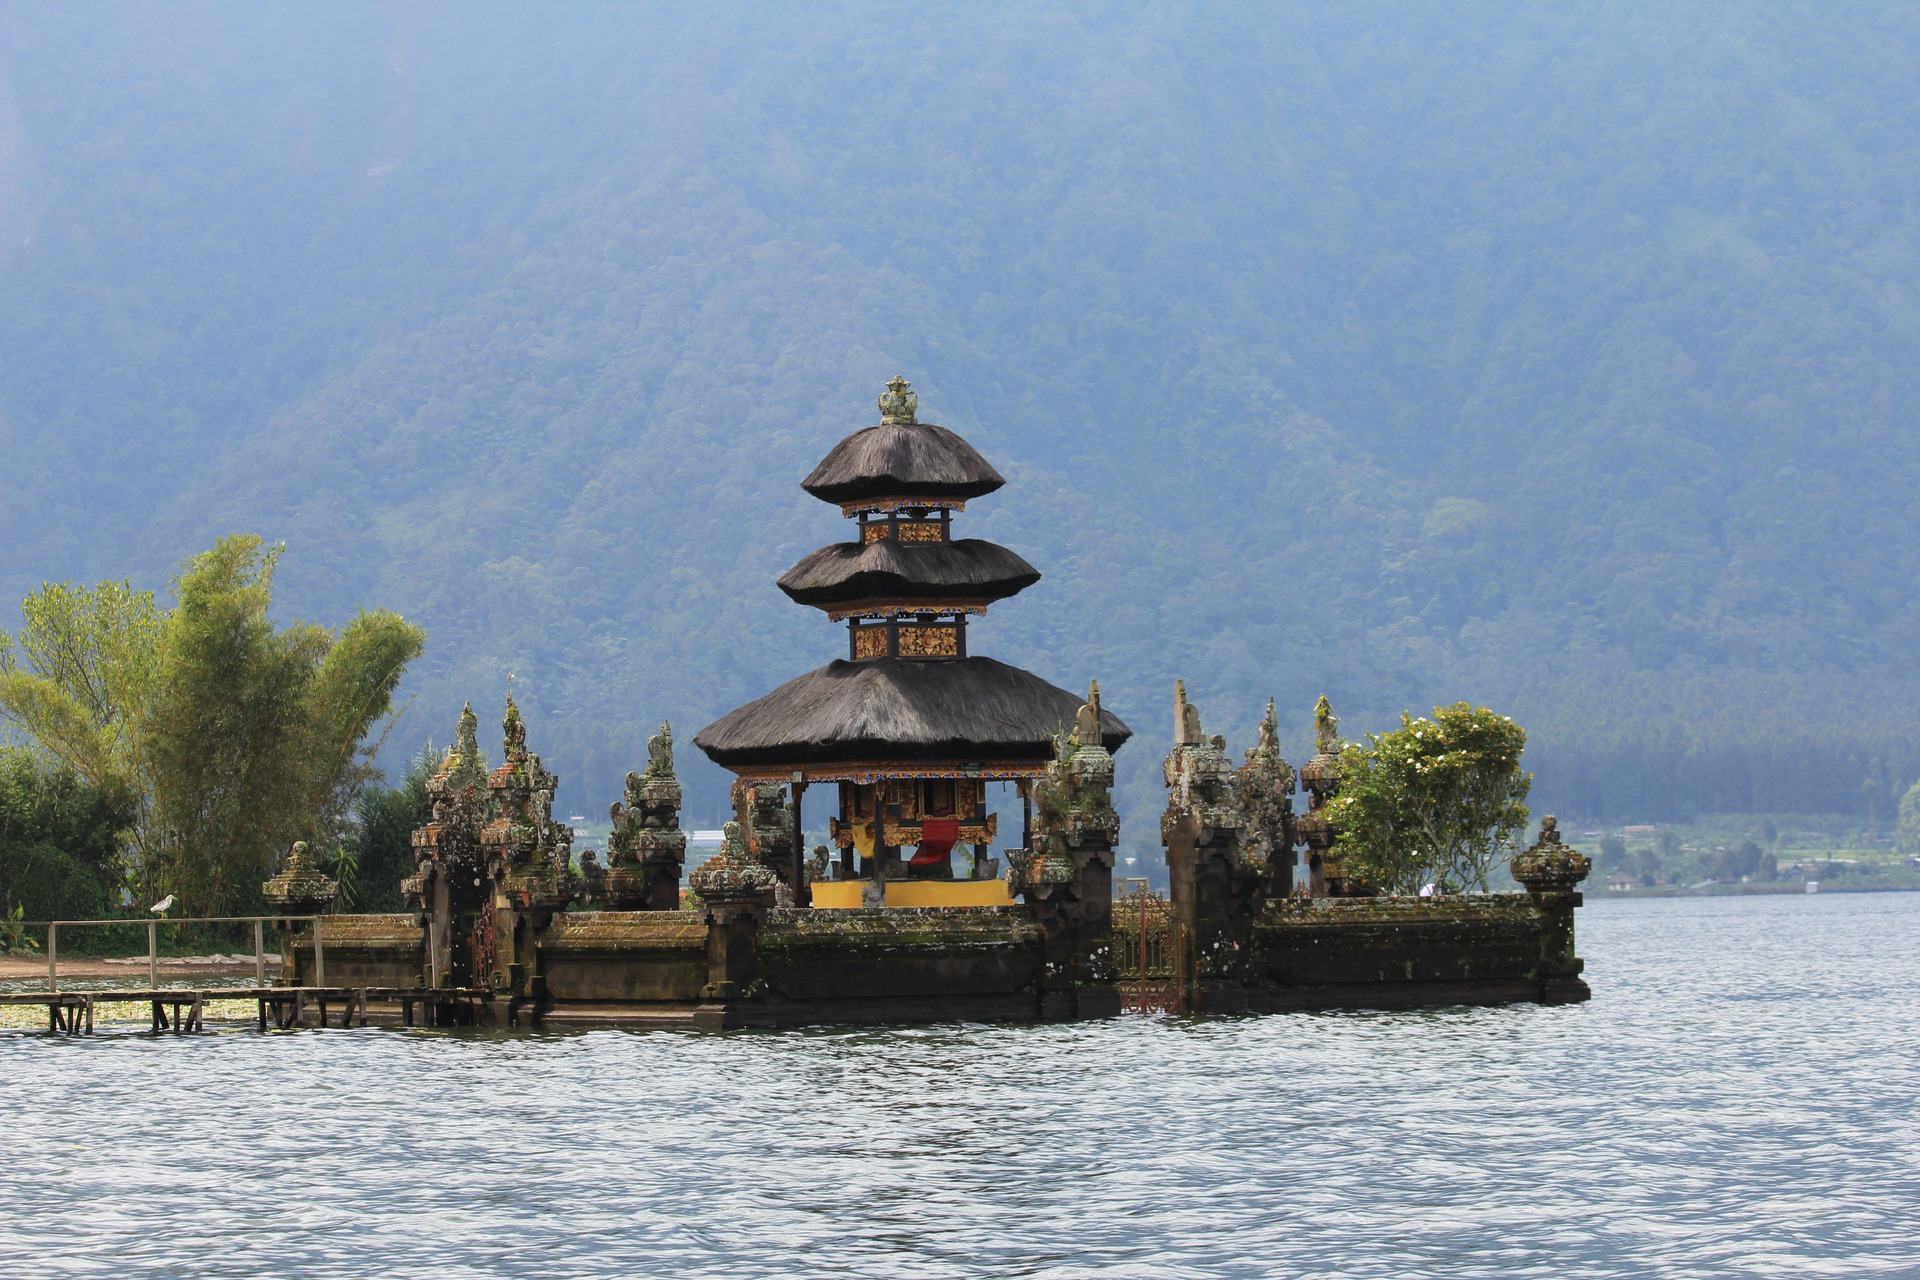 Temple på søen, Bali (Indonesien).